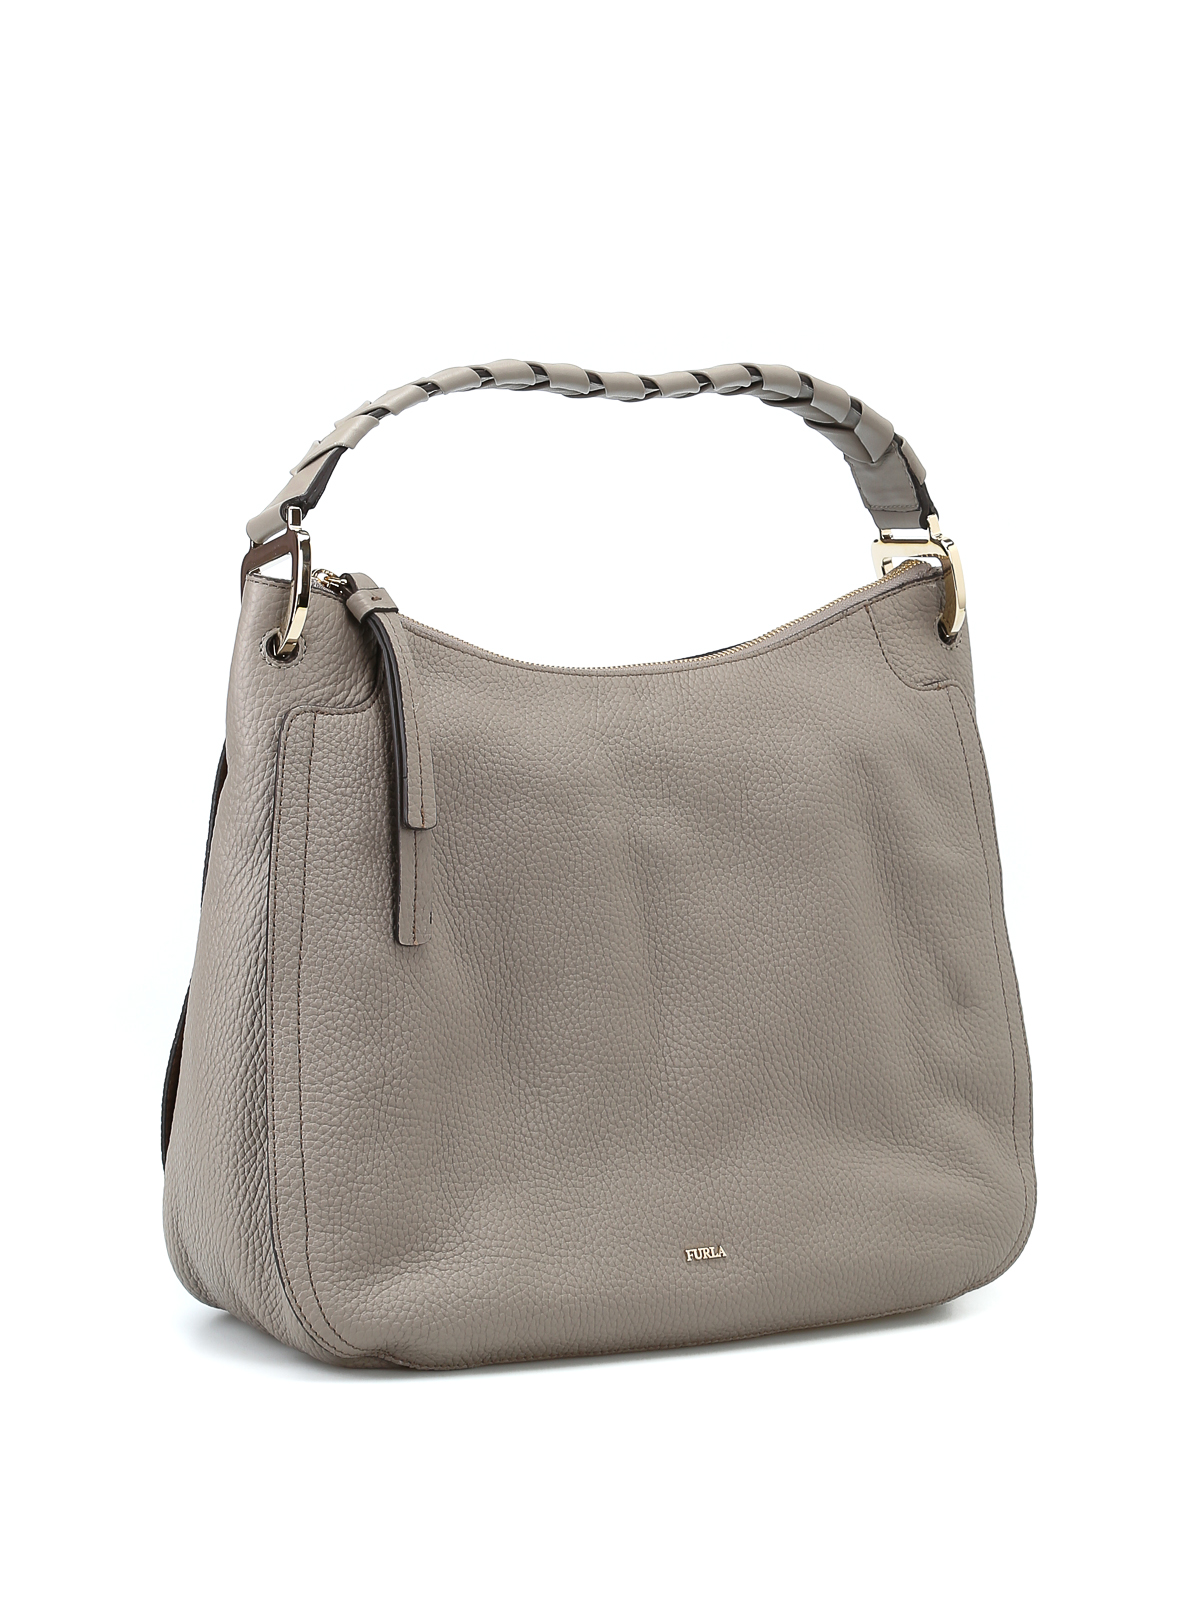 Shoulder bags Furla - Rialto greige hobo bag - 981782 | iKRIX.com